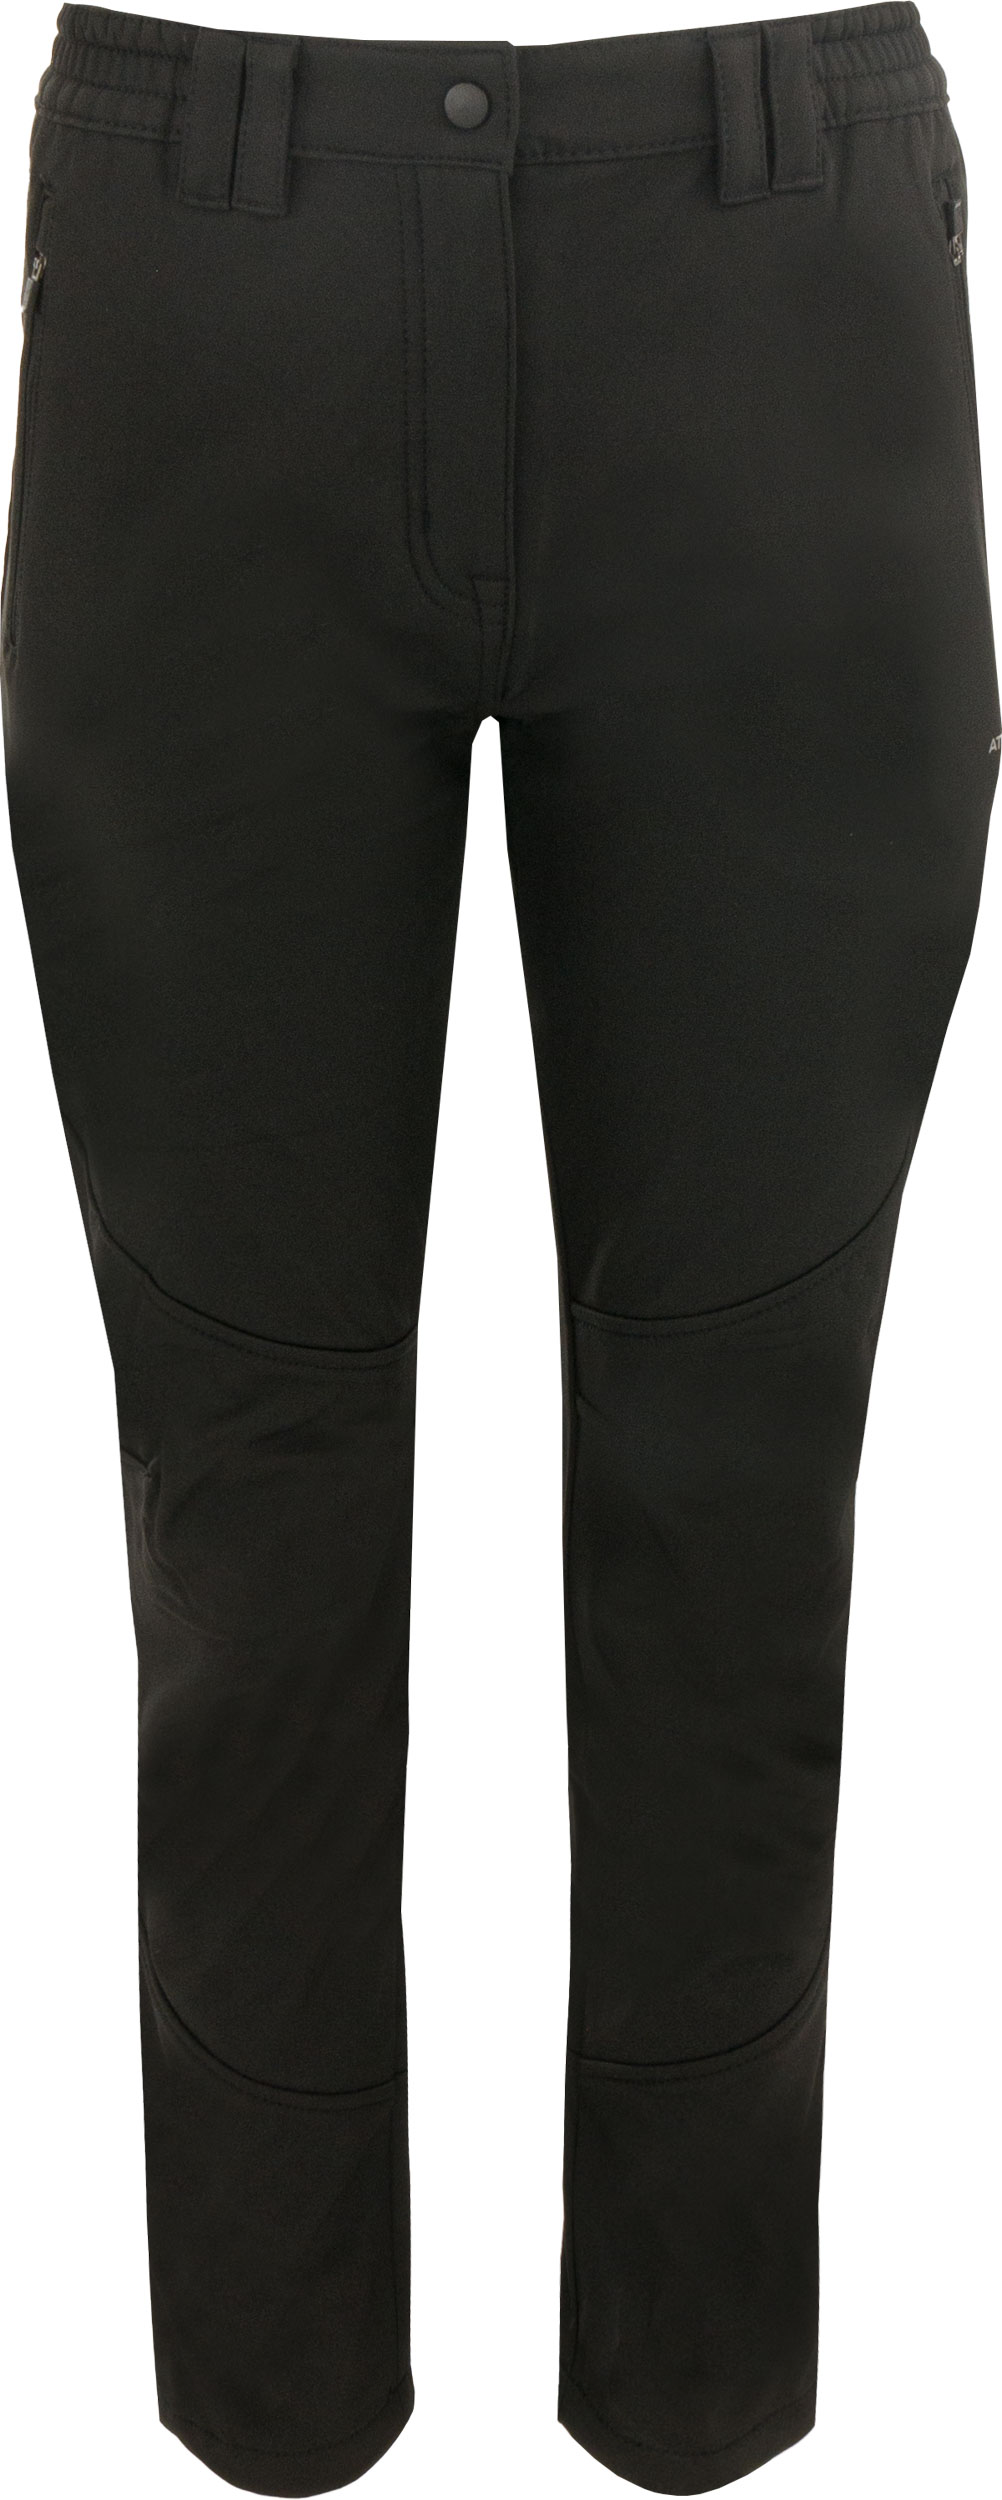 Dámské softshellové kalhoty Athl. DPT MIURA Black|48